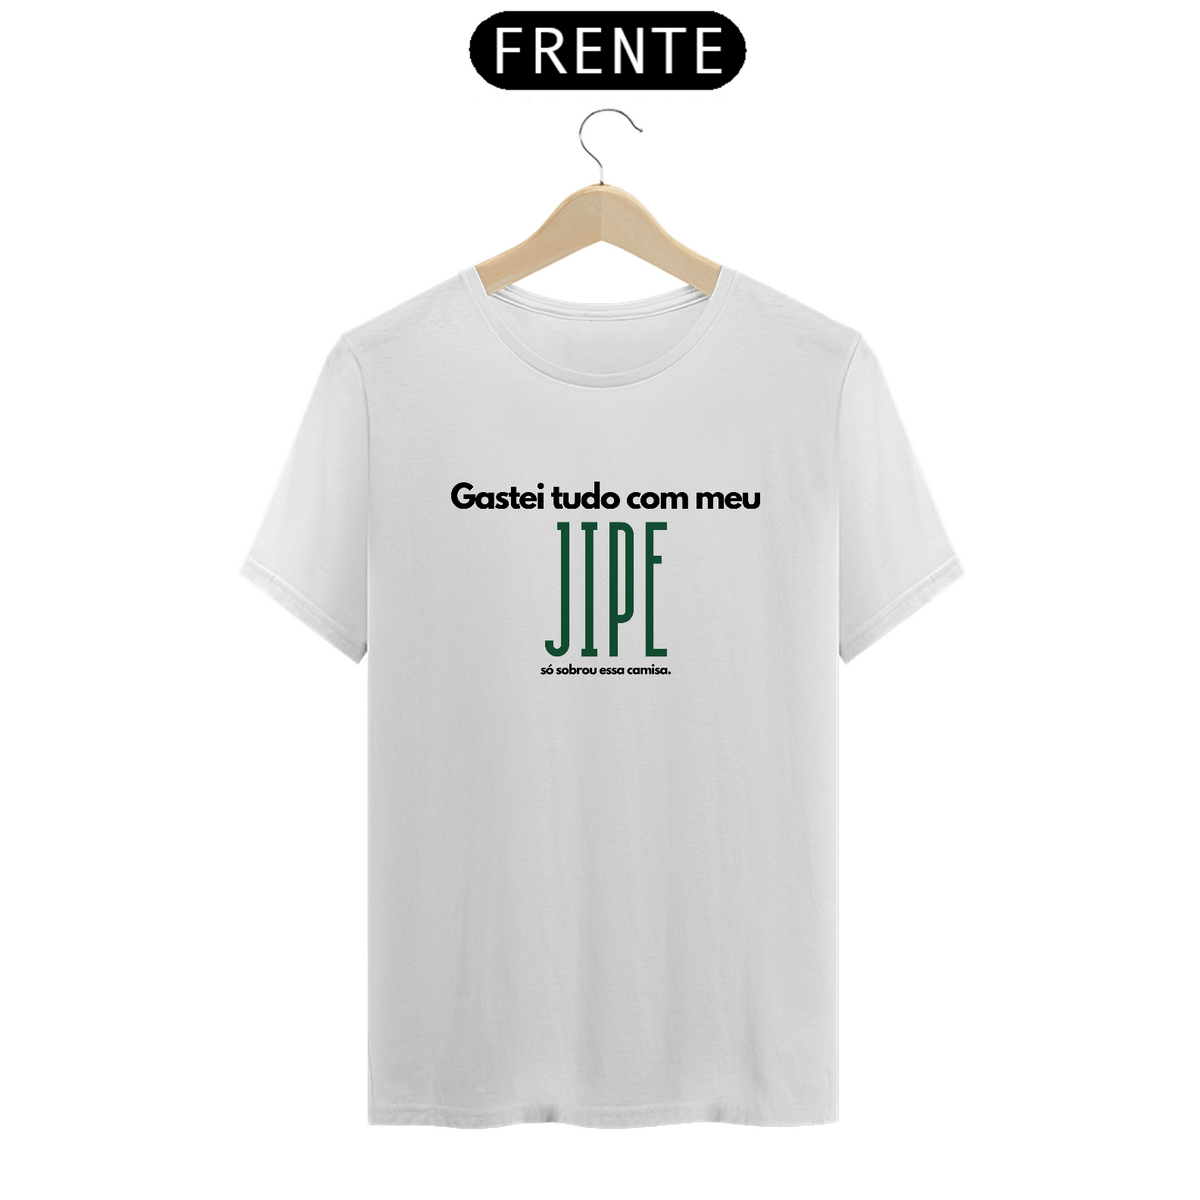 Nome do produto: T-Shirt Quality - Gastei Tudo - Letra Preta